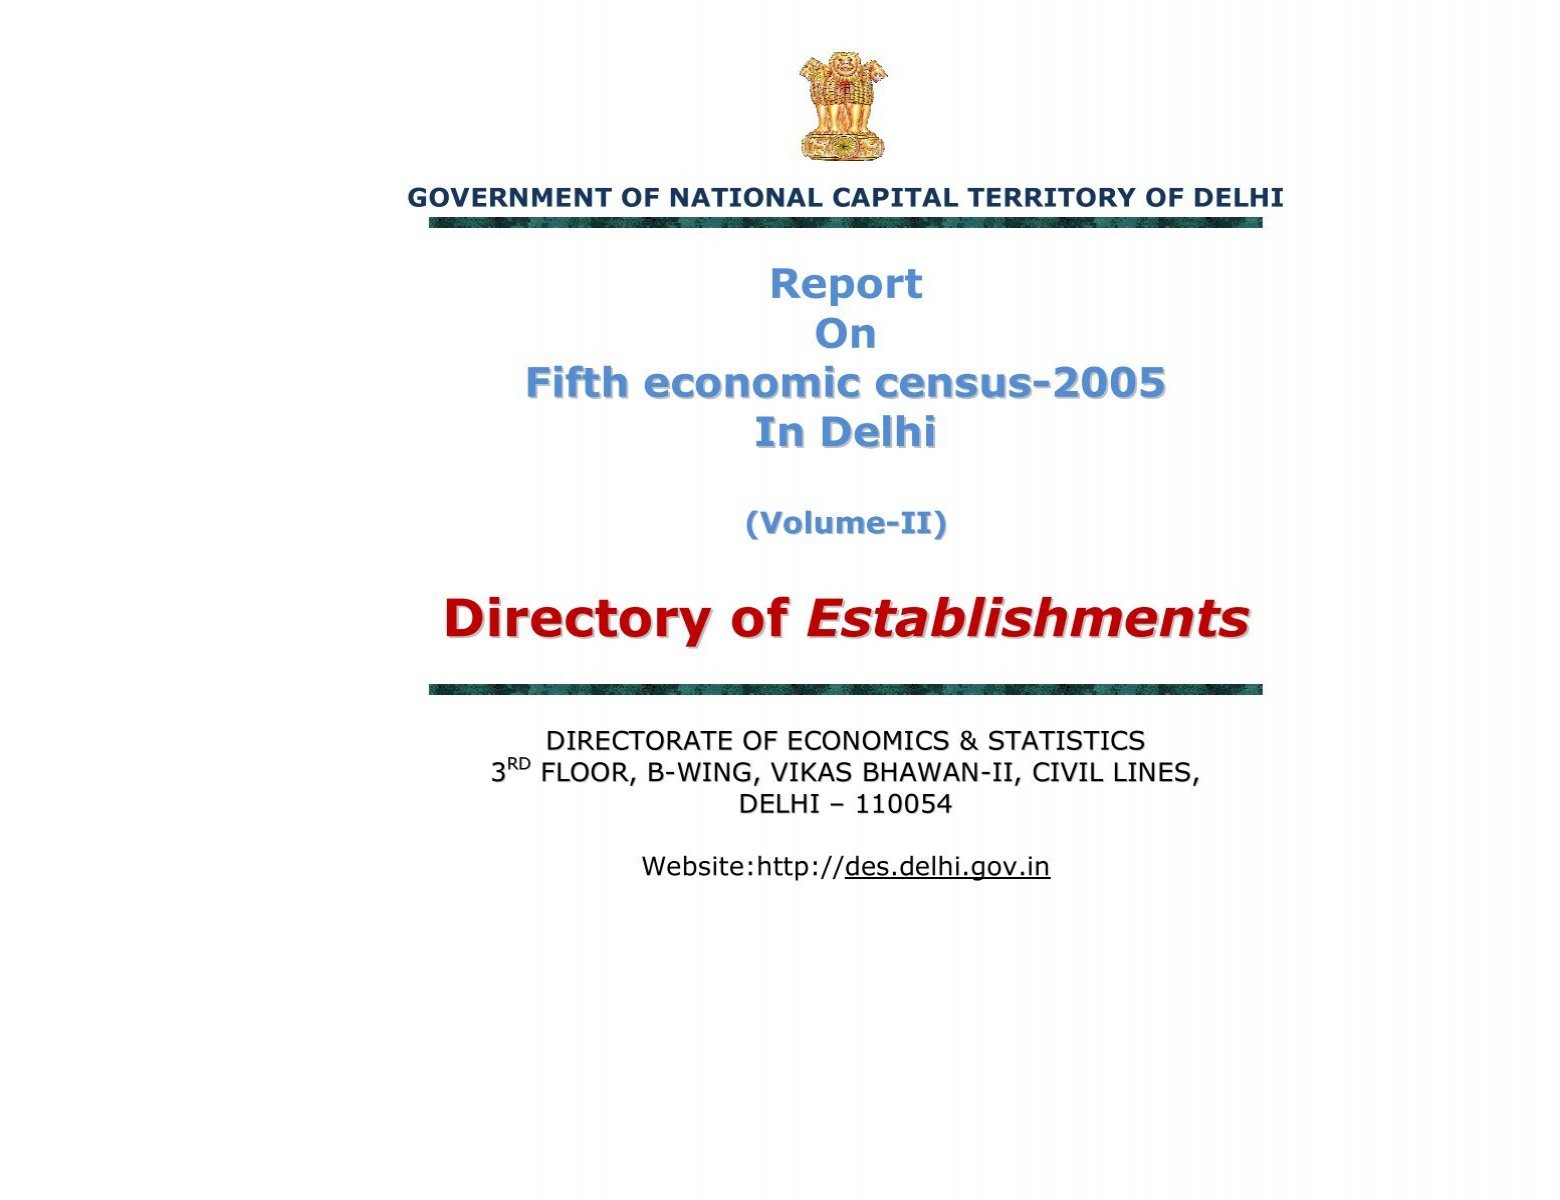 Volume-II) Directory of Establishments - Delhi